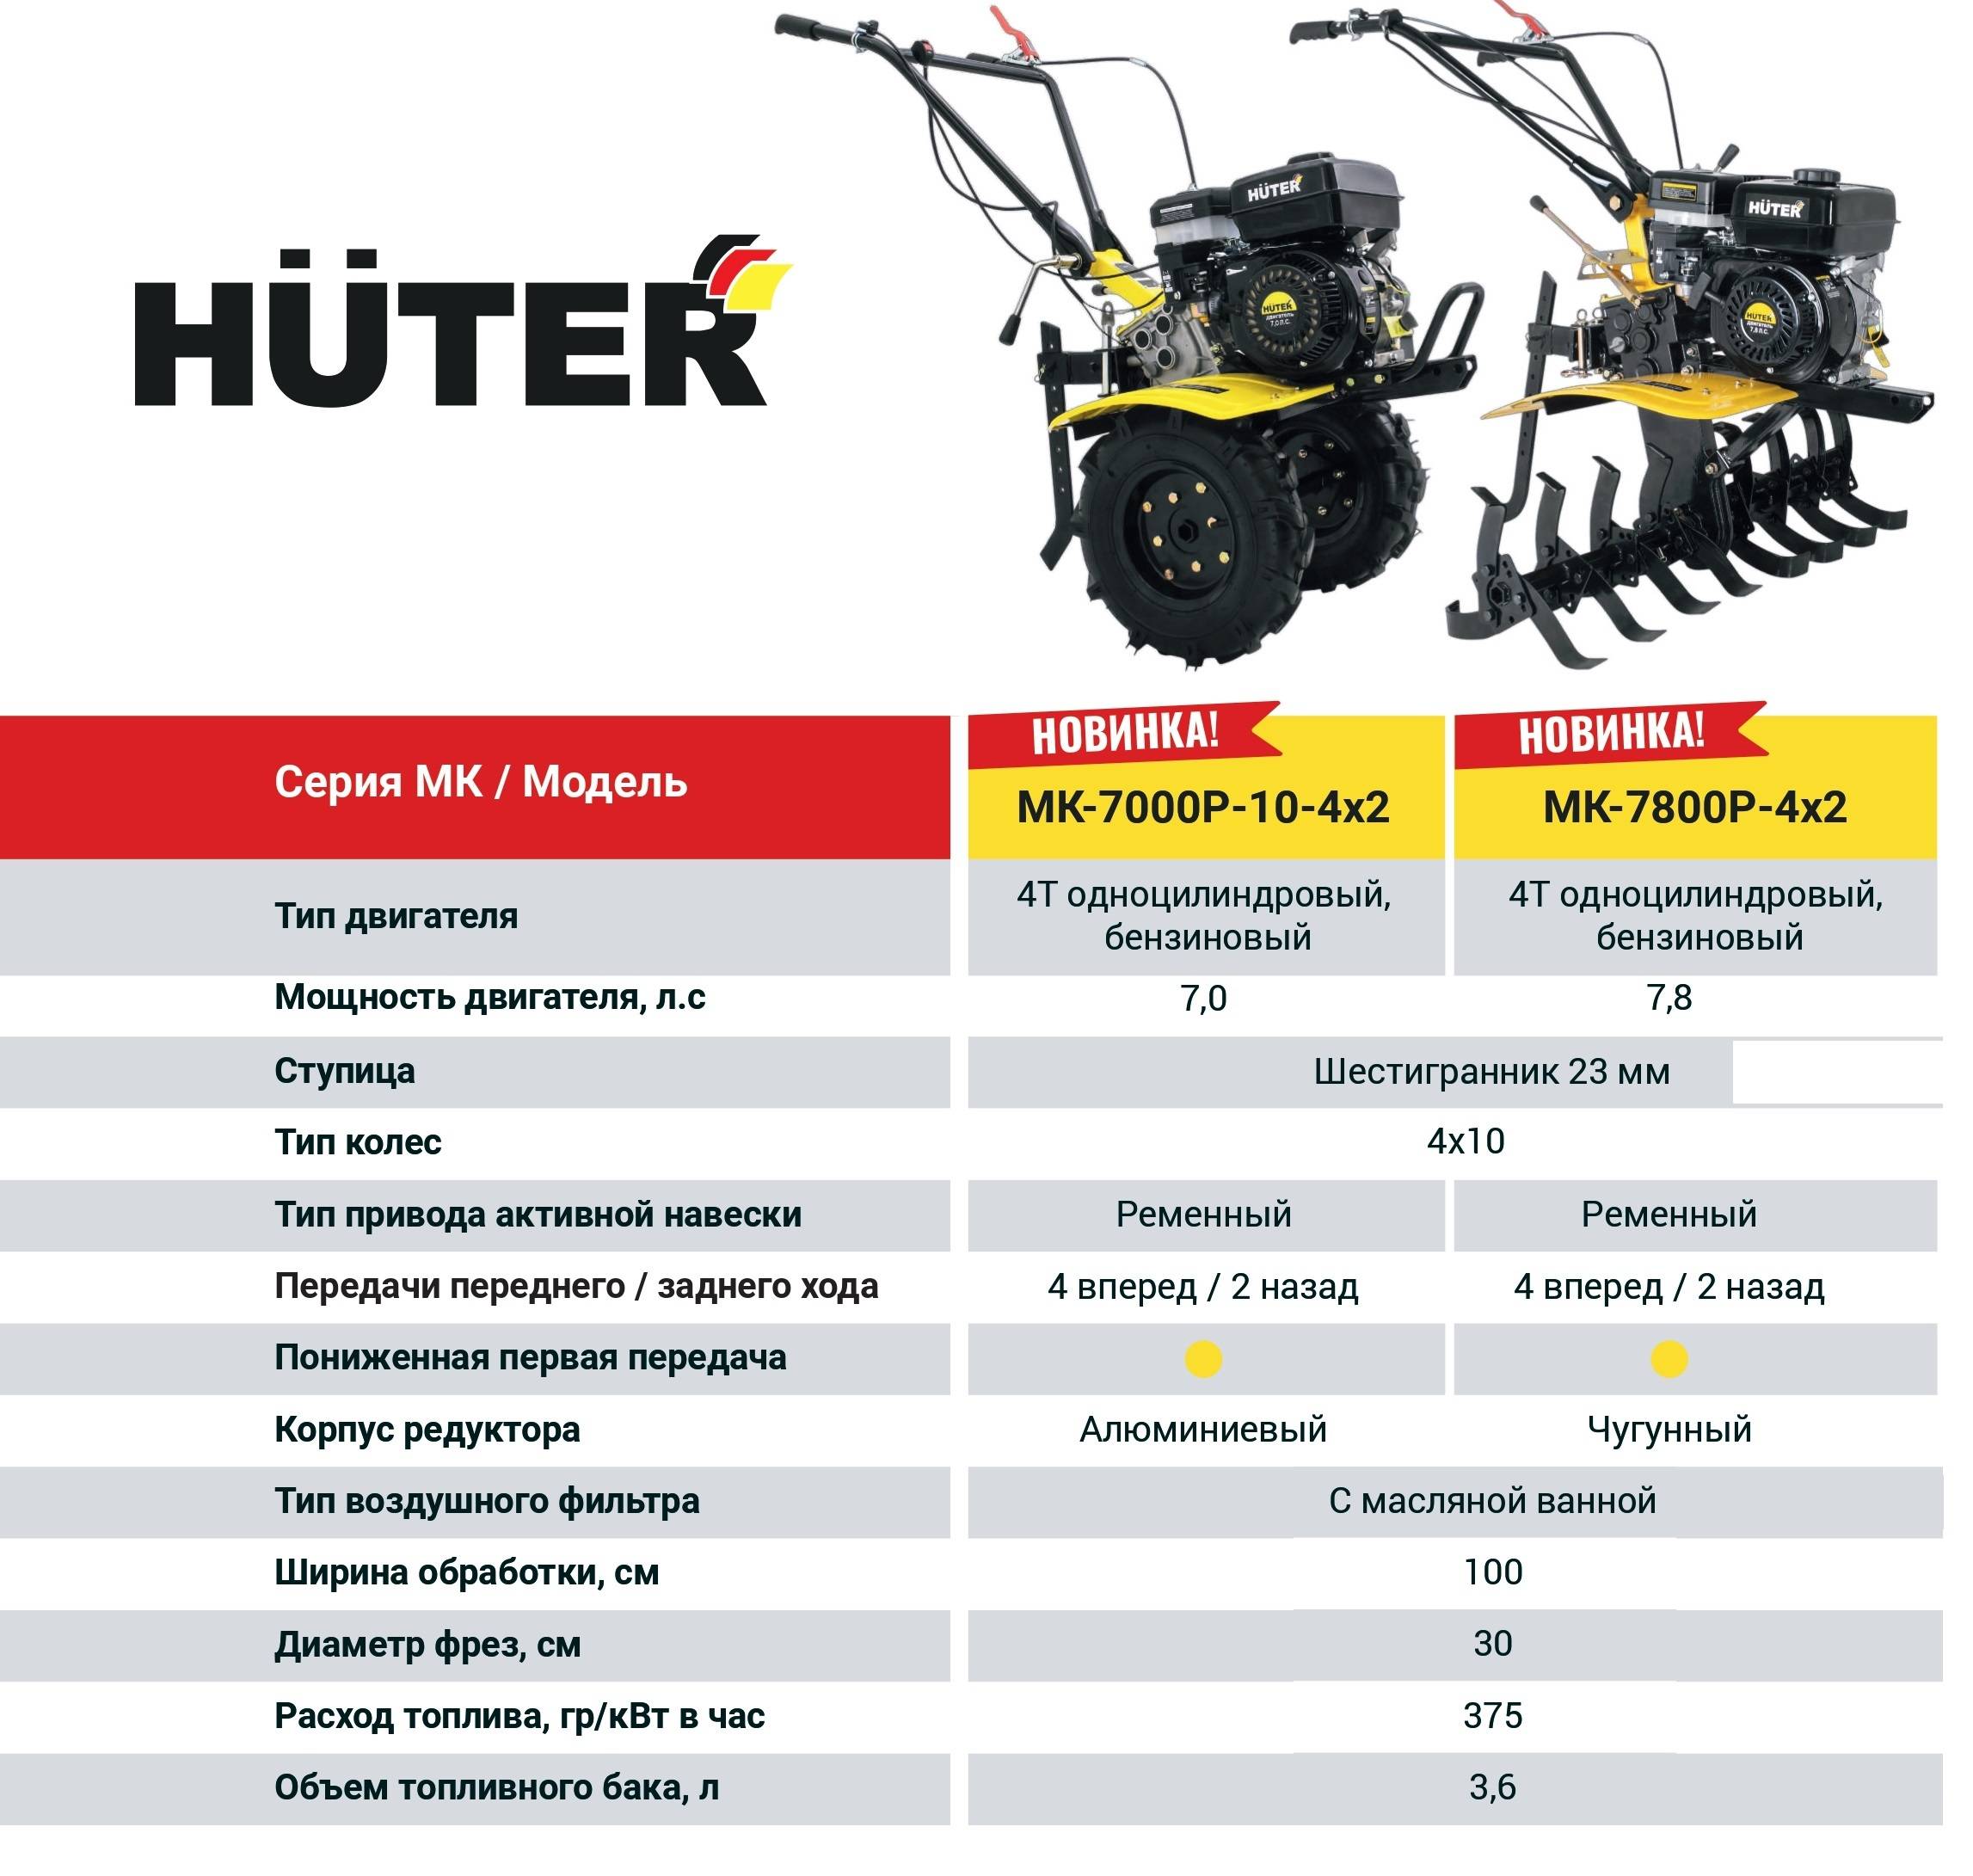 Культиваторы huter. обзор модельного ряда, характеристики, навесное оборудование, применение и эксплуатация